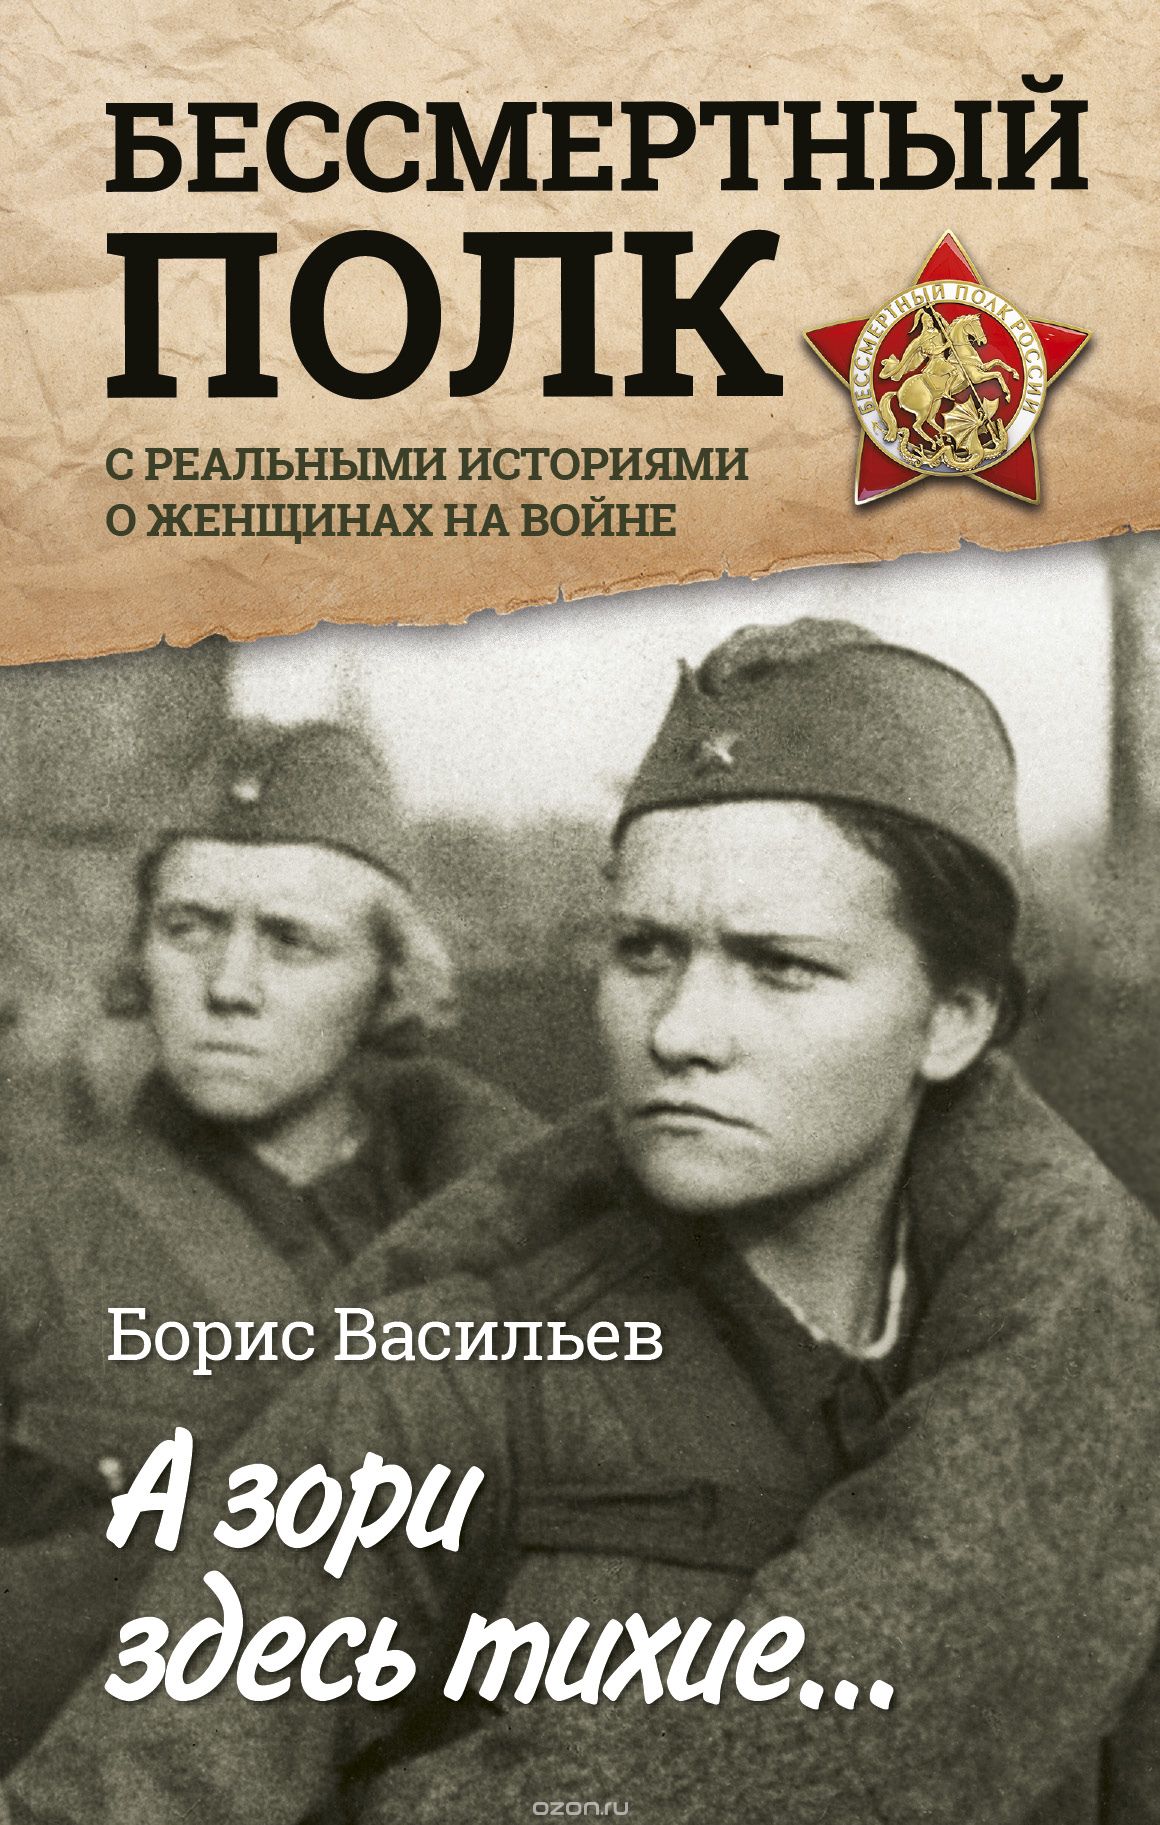 Скачать книгу "А зори здесь тихие... С реальными историями о женщинах на войне, Васильев Борис Львович"